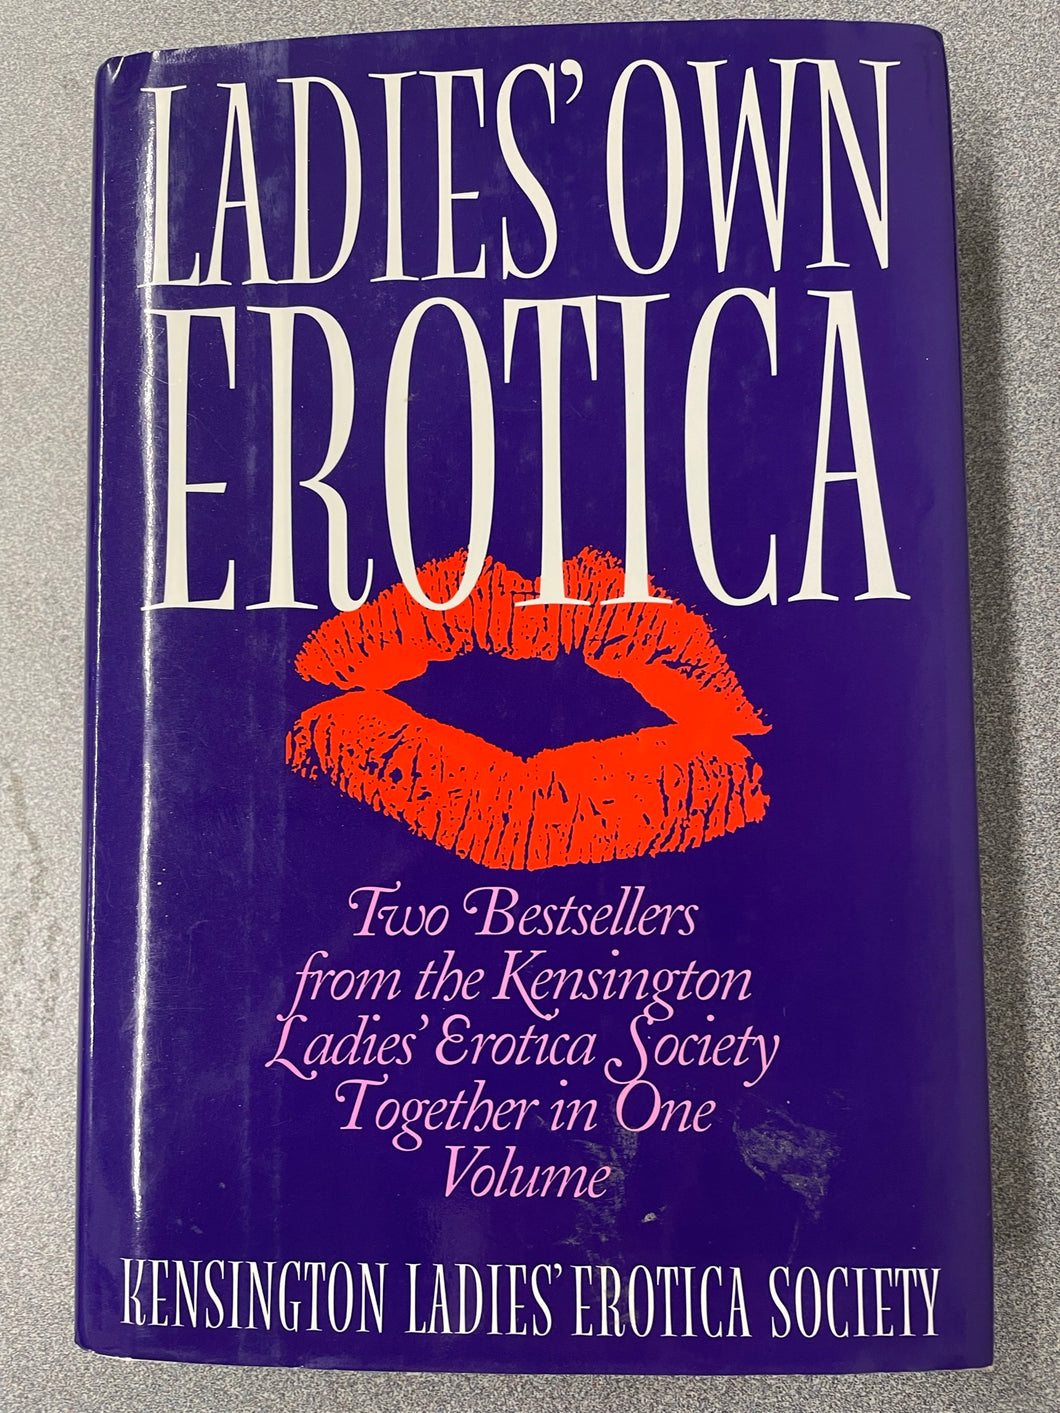 Ladies' Own Erotica: Two Bestsellers From the Kensingon Ladies' Erotica Society Together in One Volume, Jelinek, Estelle, ed., [1986] ER 7/23